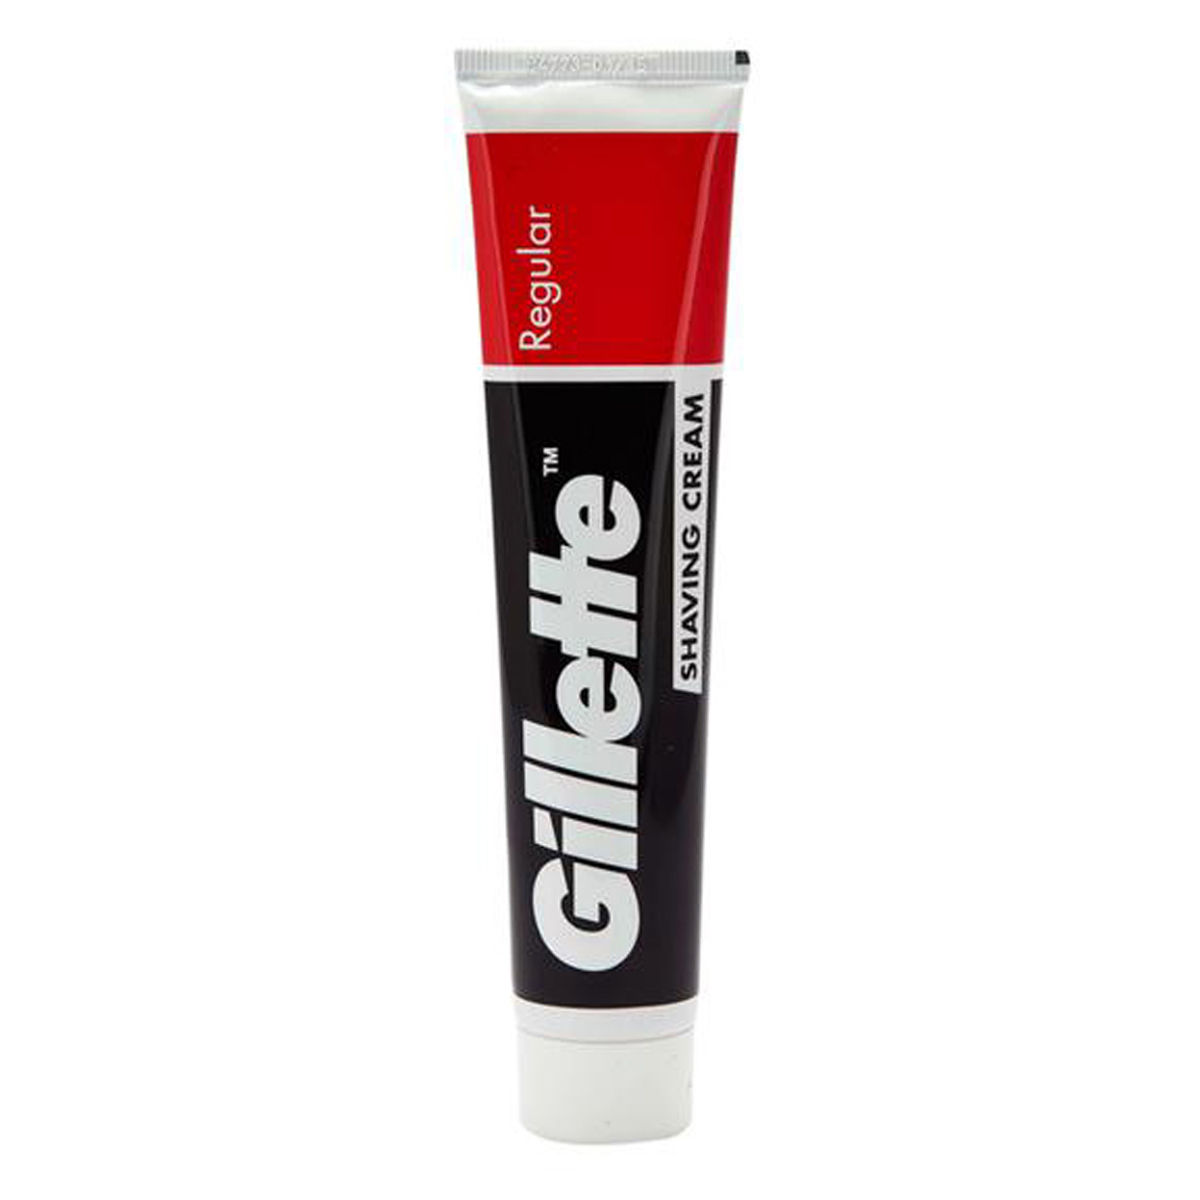 Buy Gillette Shaving Cream Regular, 70 gm Online